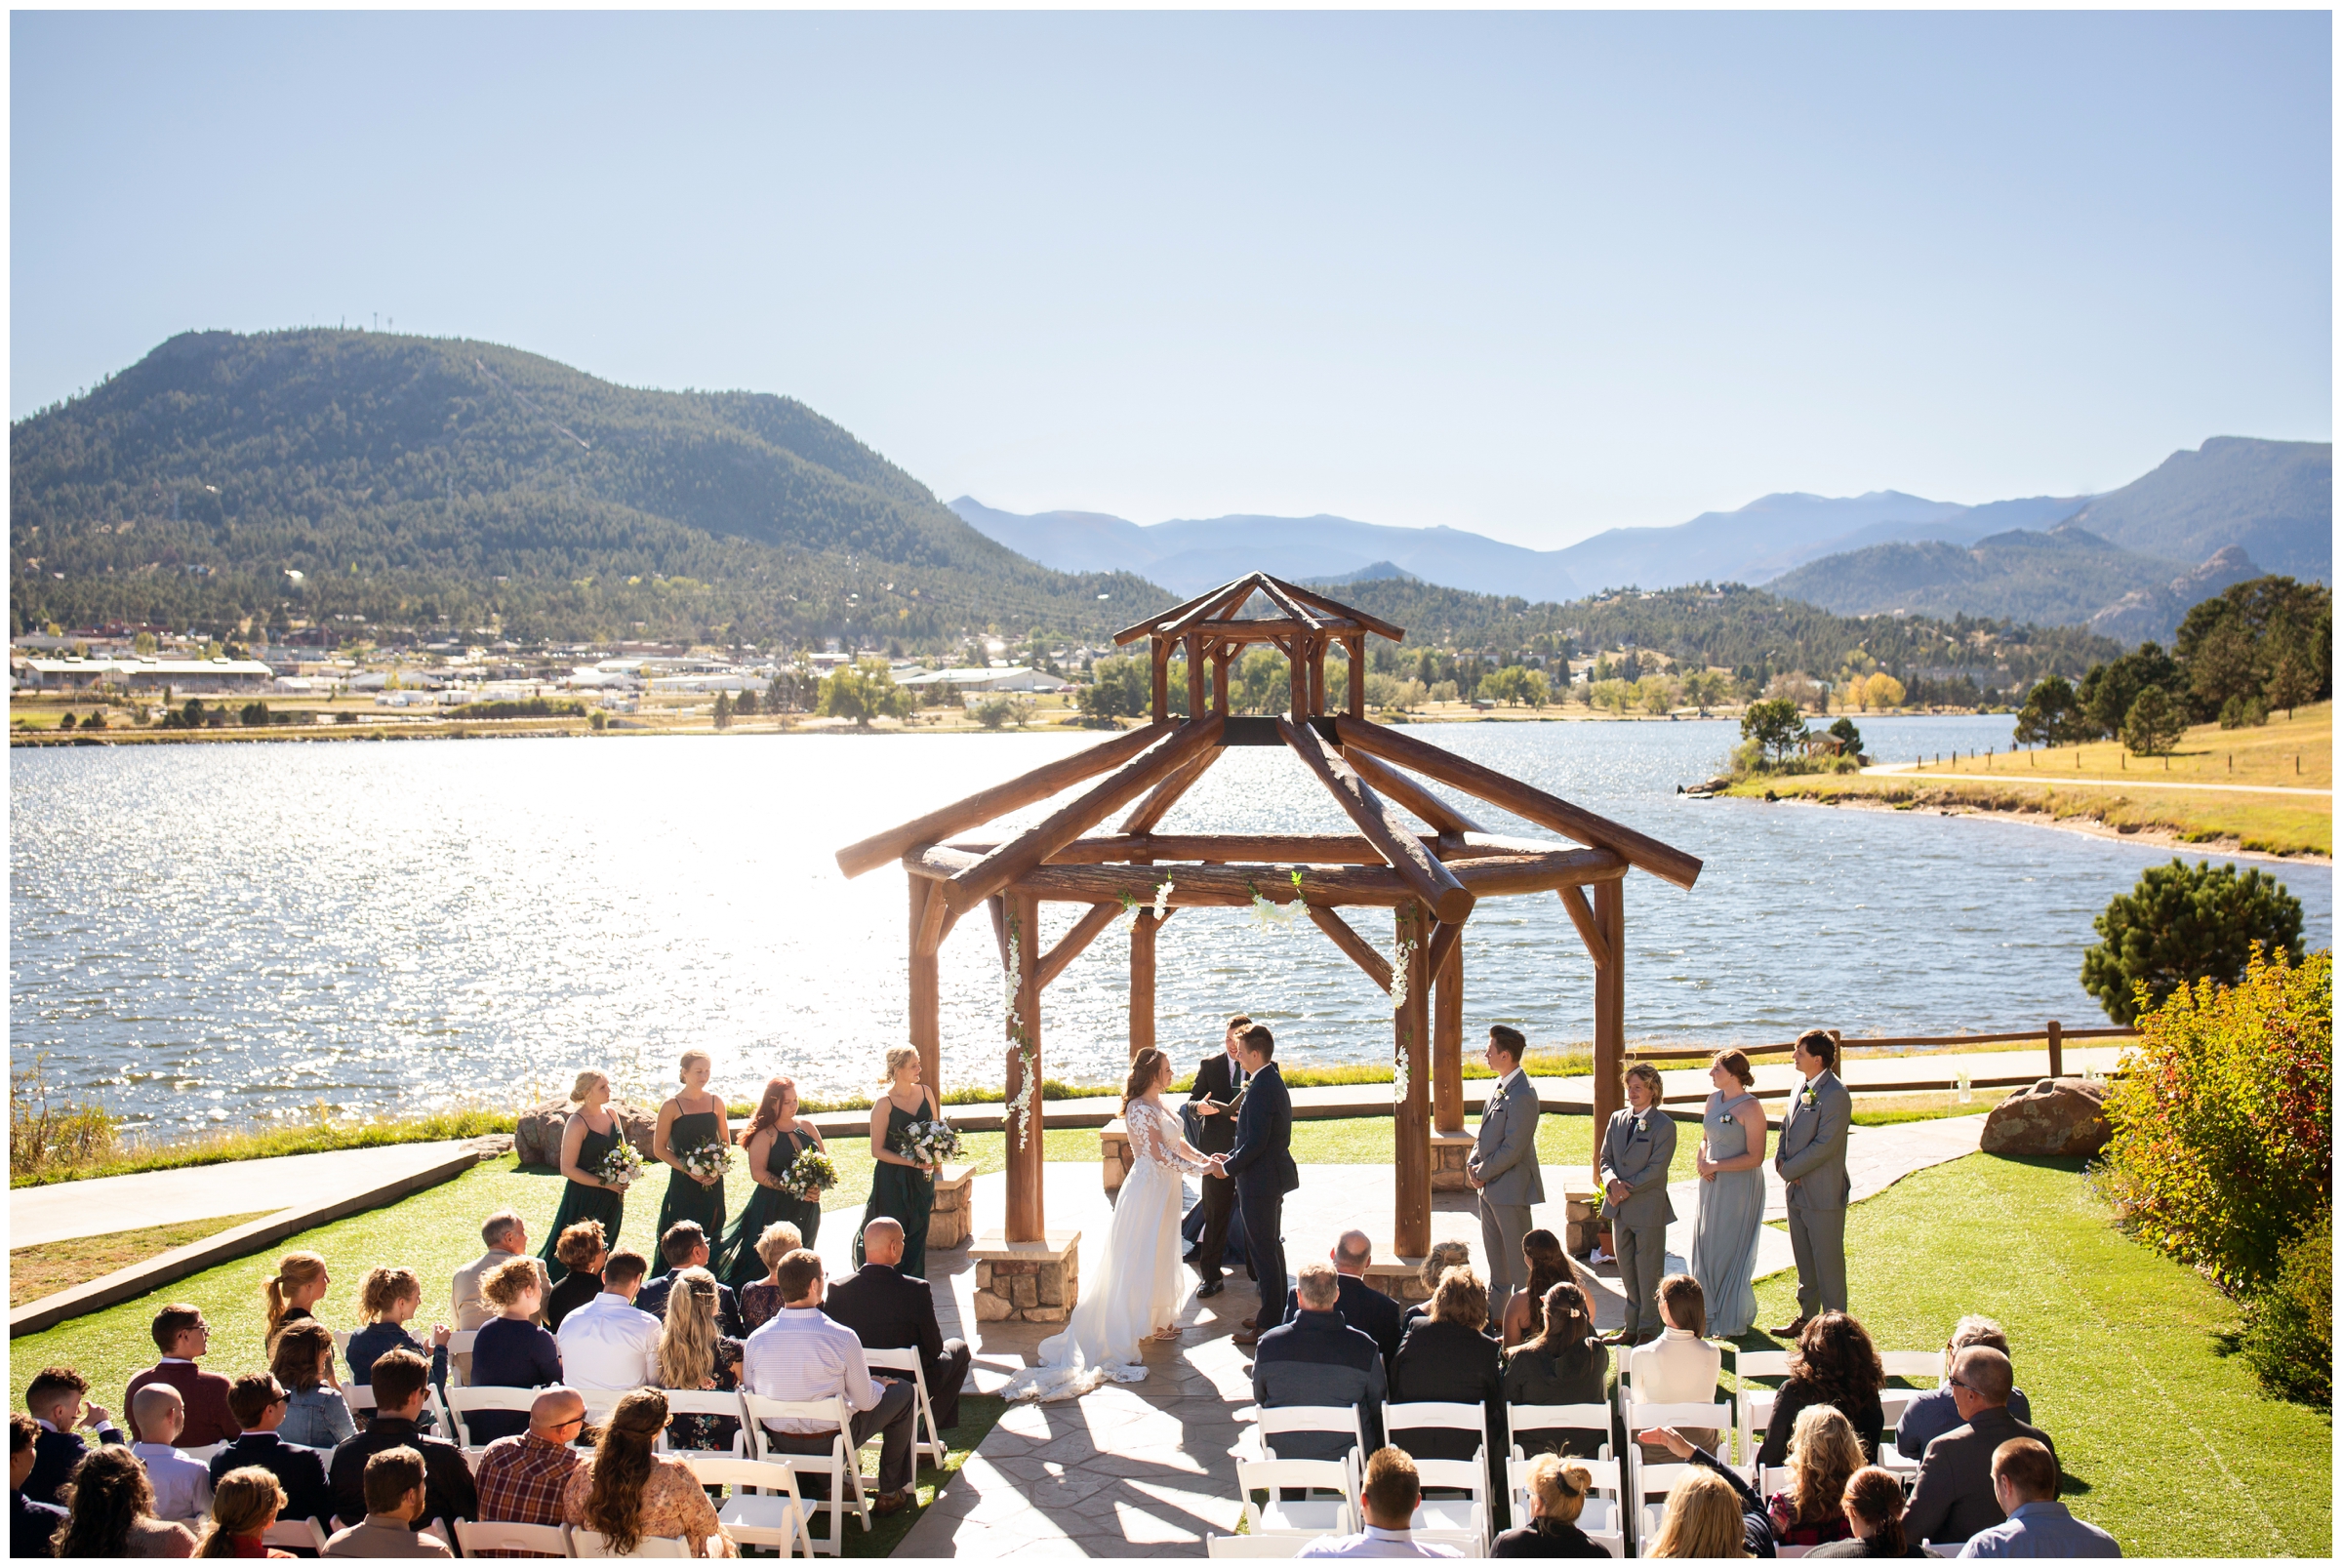 Estes Park Resort wedding ceremony photos by Colorado photographer Plum Pretty Photography 